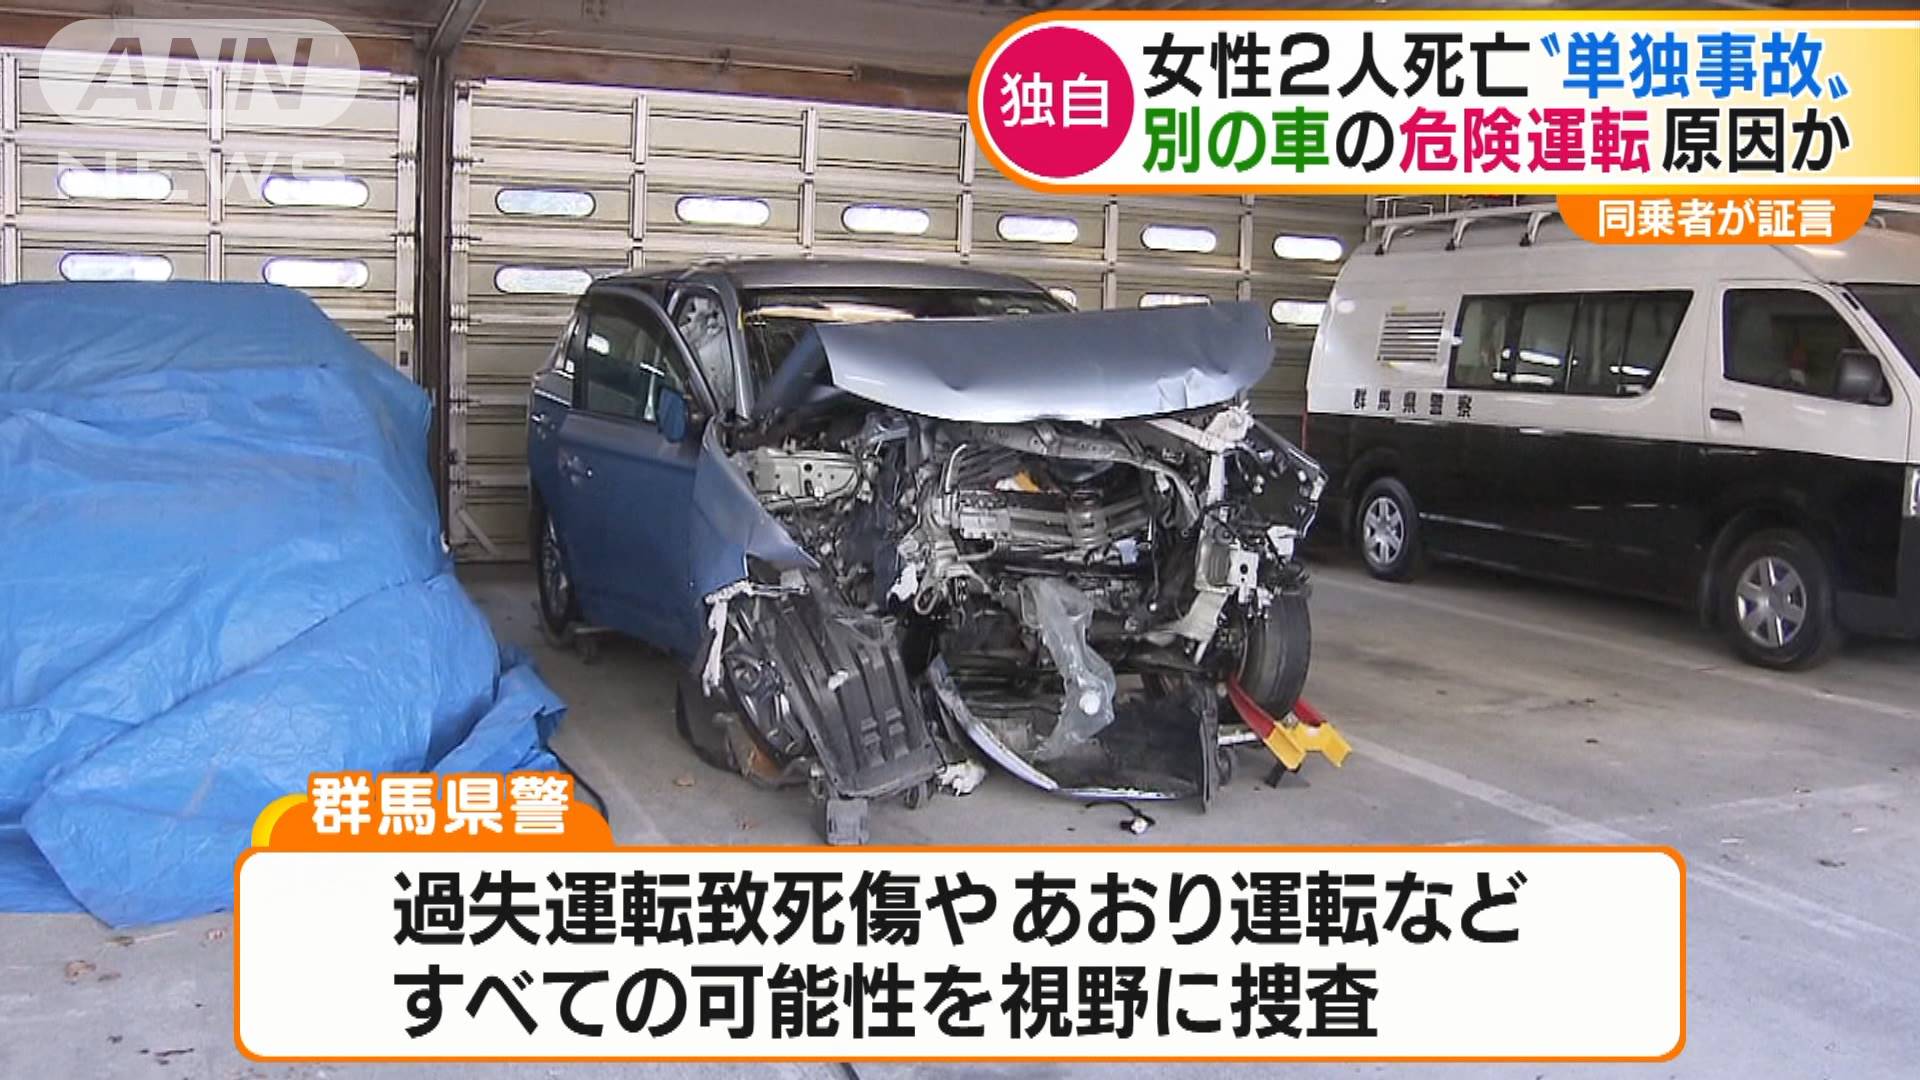 急な幅寄せで 2人死亡事故で生存者が証言 テレ朝news テレビ朝日のニュースサイト